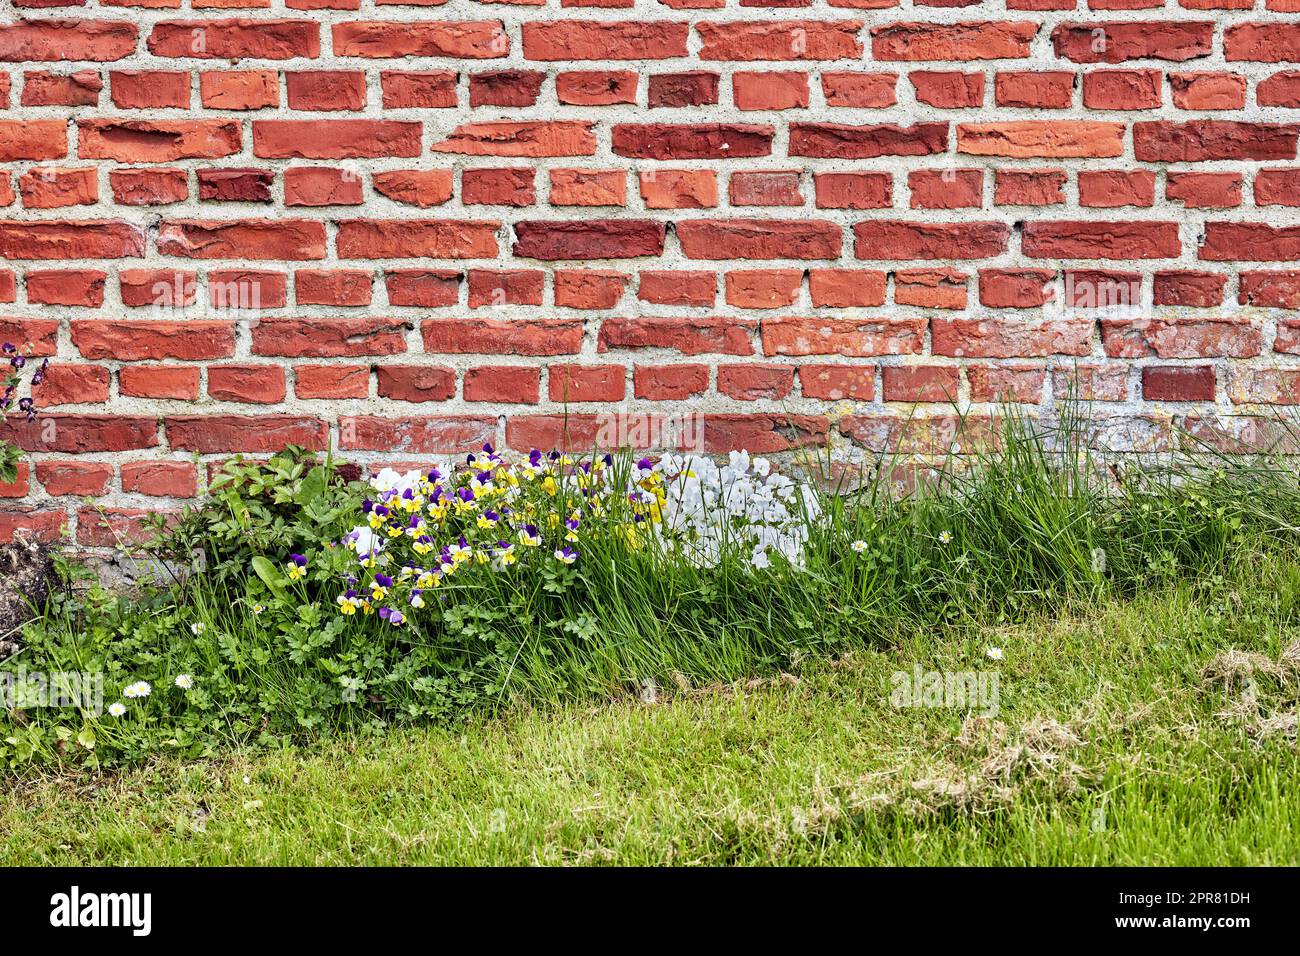 Eine Nahaufnahme einer Mauer aus roten Ziegeln in einem alten Gebäude mit üppigem grünen Gras und wilden Gänseblümchen, die im Frühling wachsen. Harte raue Oberfläche mit Zementputz, der an einer verwitterten Betonstruktur befestigt ist Stockfoto